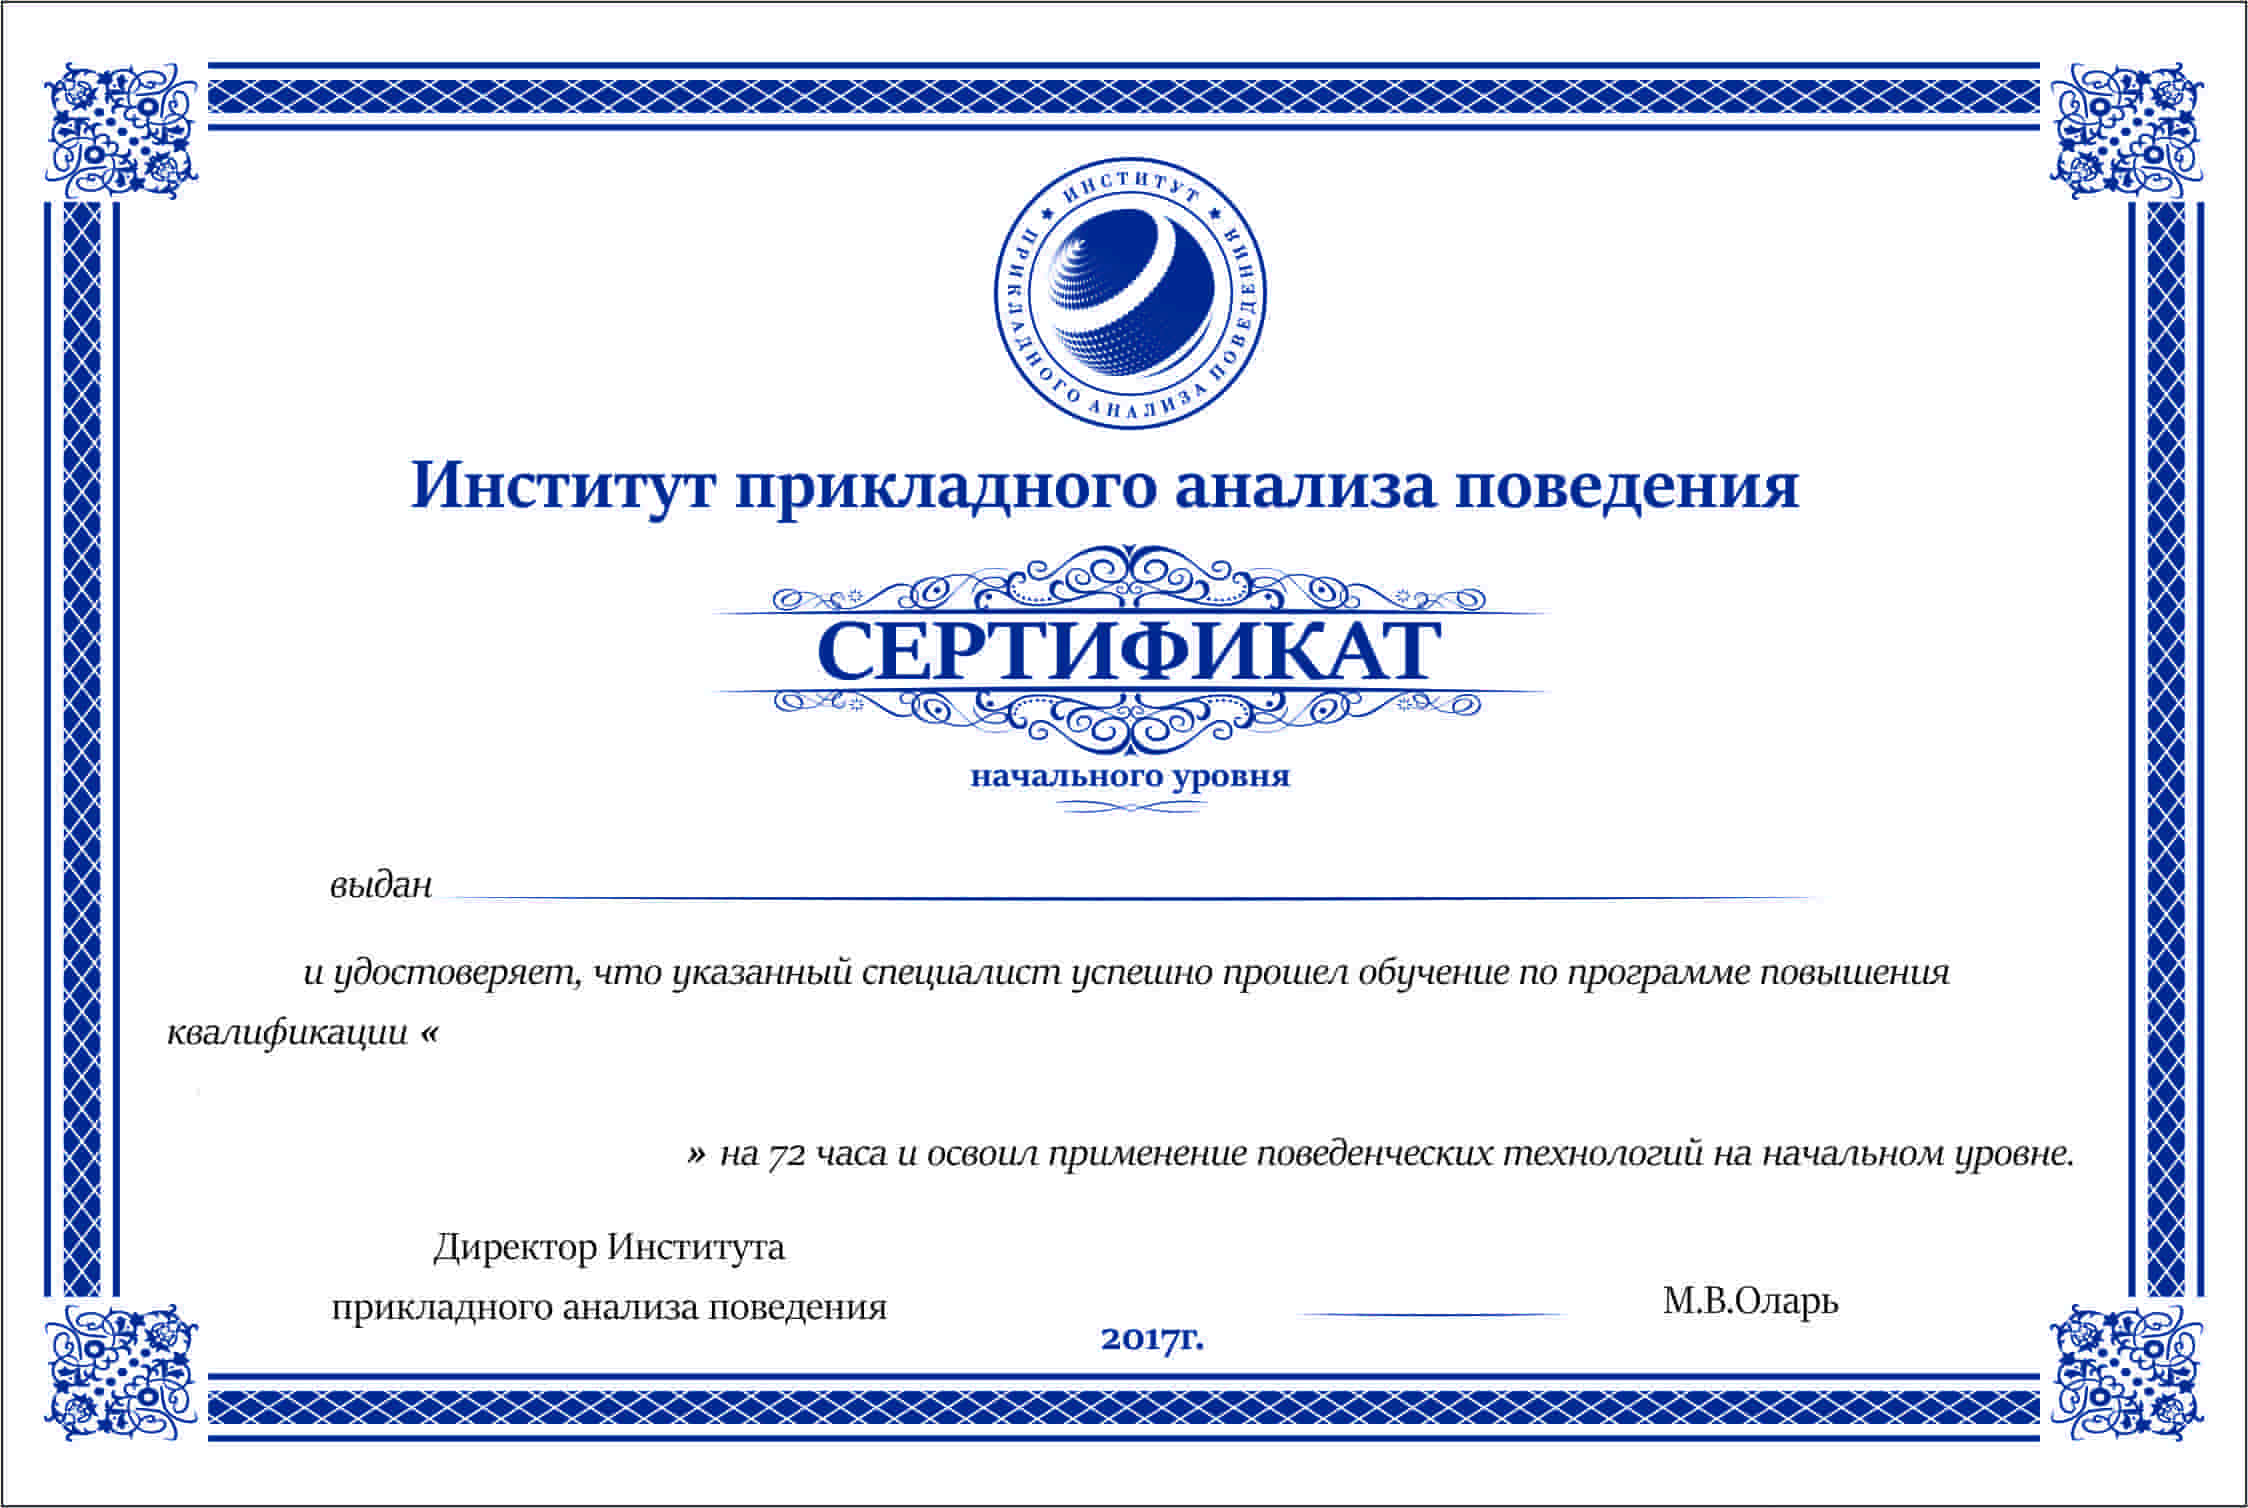 Сертификат института. Сертификат учебного заведения. Сертификат прикладного анализа поведения. Сертификат учебного центра